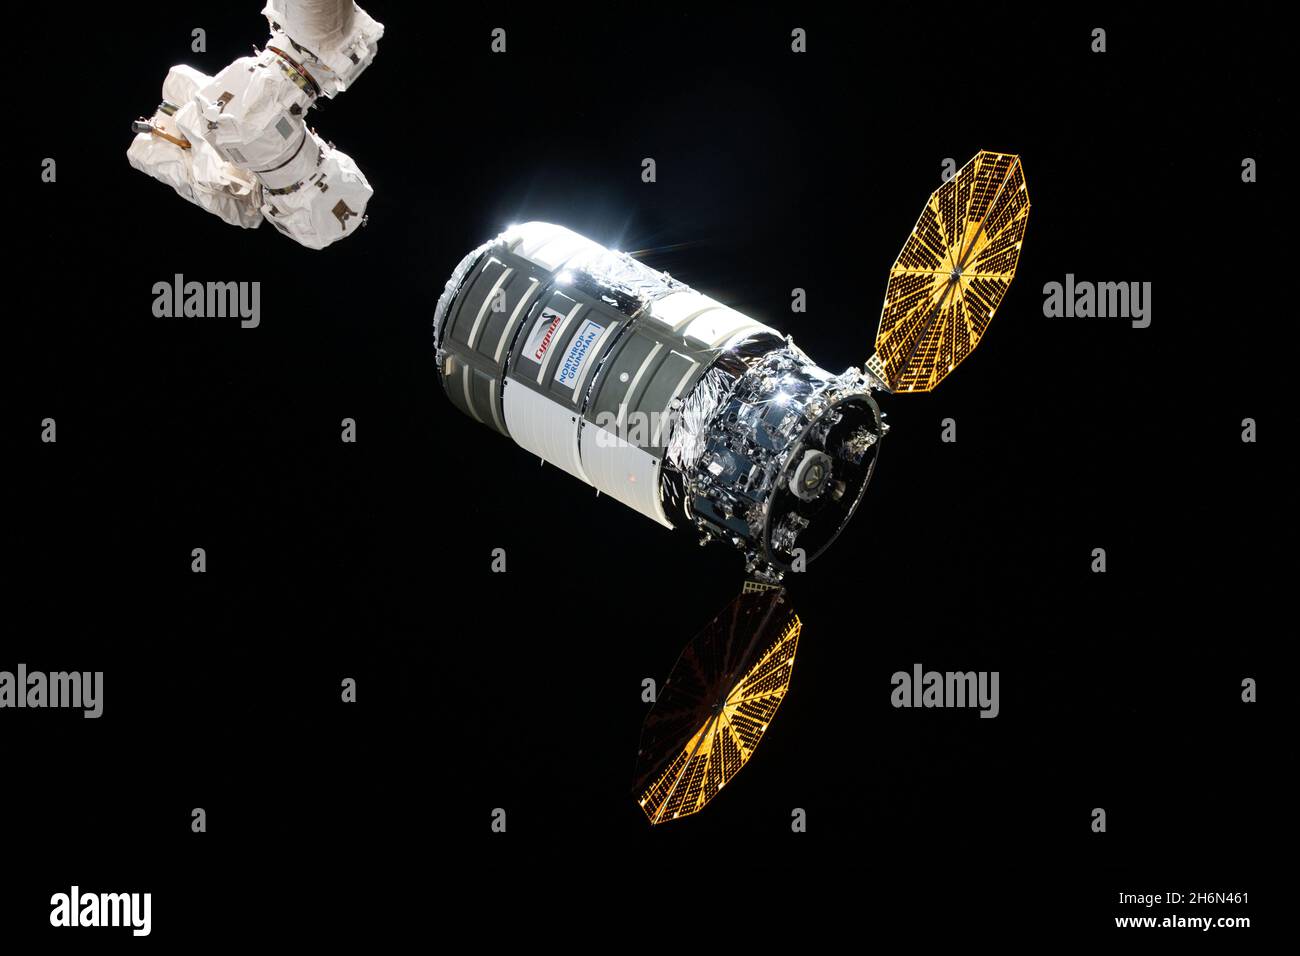 Cygnus arrive à la Station spatiale internationale (ISS) le 12 août 2021 après un lancement deux jours avant une fusée Northrop Grumman Antares du centre de vol Wallops de la NASA sur l'île Wallops, en Virginie.Il s'agit de la 16e mission commerciale de services de réapprovisionnement de l'entreprise à la station spatiale de la NASA.Northrop Grumman a nommé l'engin spatial d'après l'astronaute de la NASA Ellison Onizuka, le premier astronaute américain d'Asie.Cygnus sera en orbite le mercredi 15 décembre 2021, à la suite d'un lancement de moteur de mise hors orbite pour mettre en place une rentrée destructrice dans laquelle l'engin spatial, rempli de déchets la station spatiale cr Banque D'Images